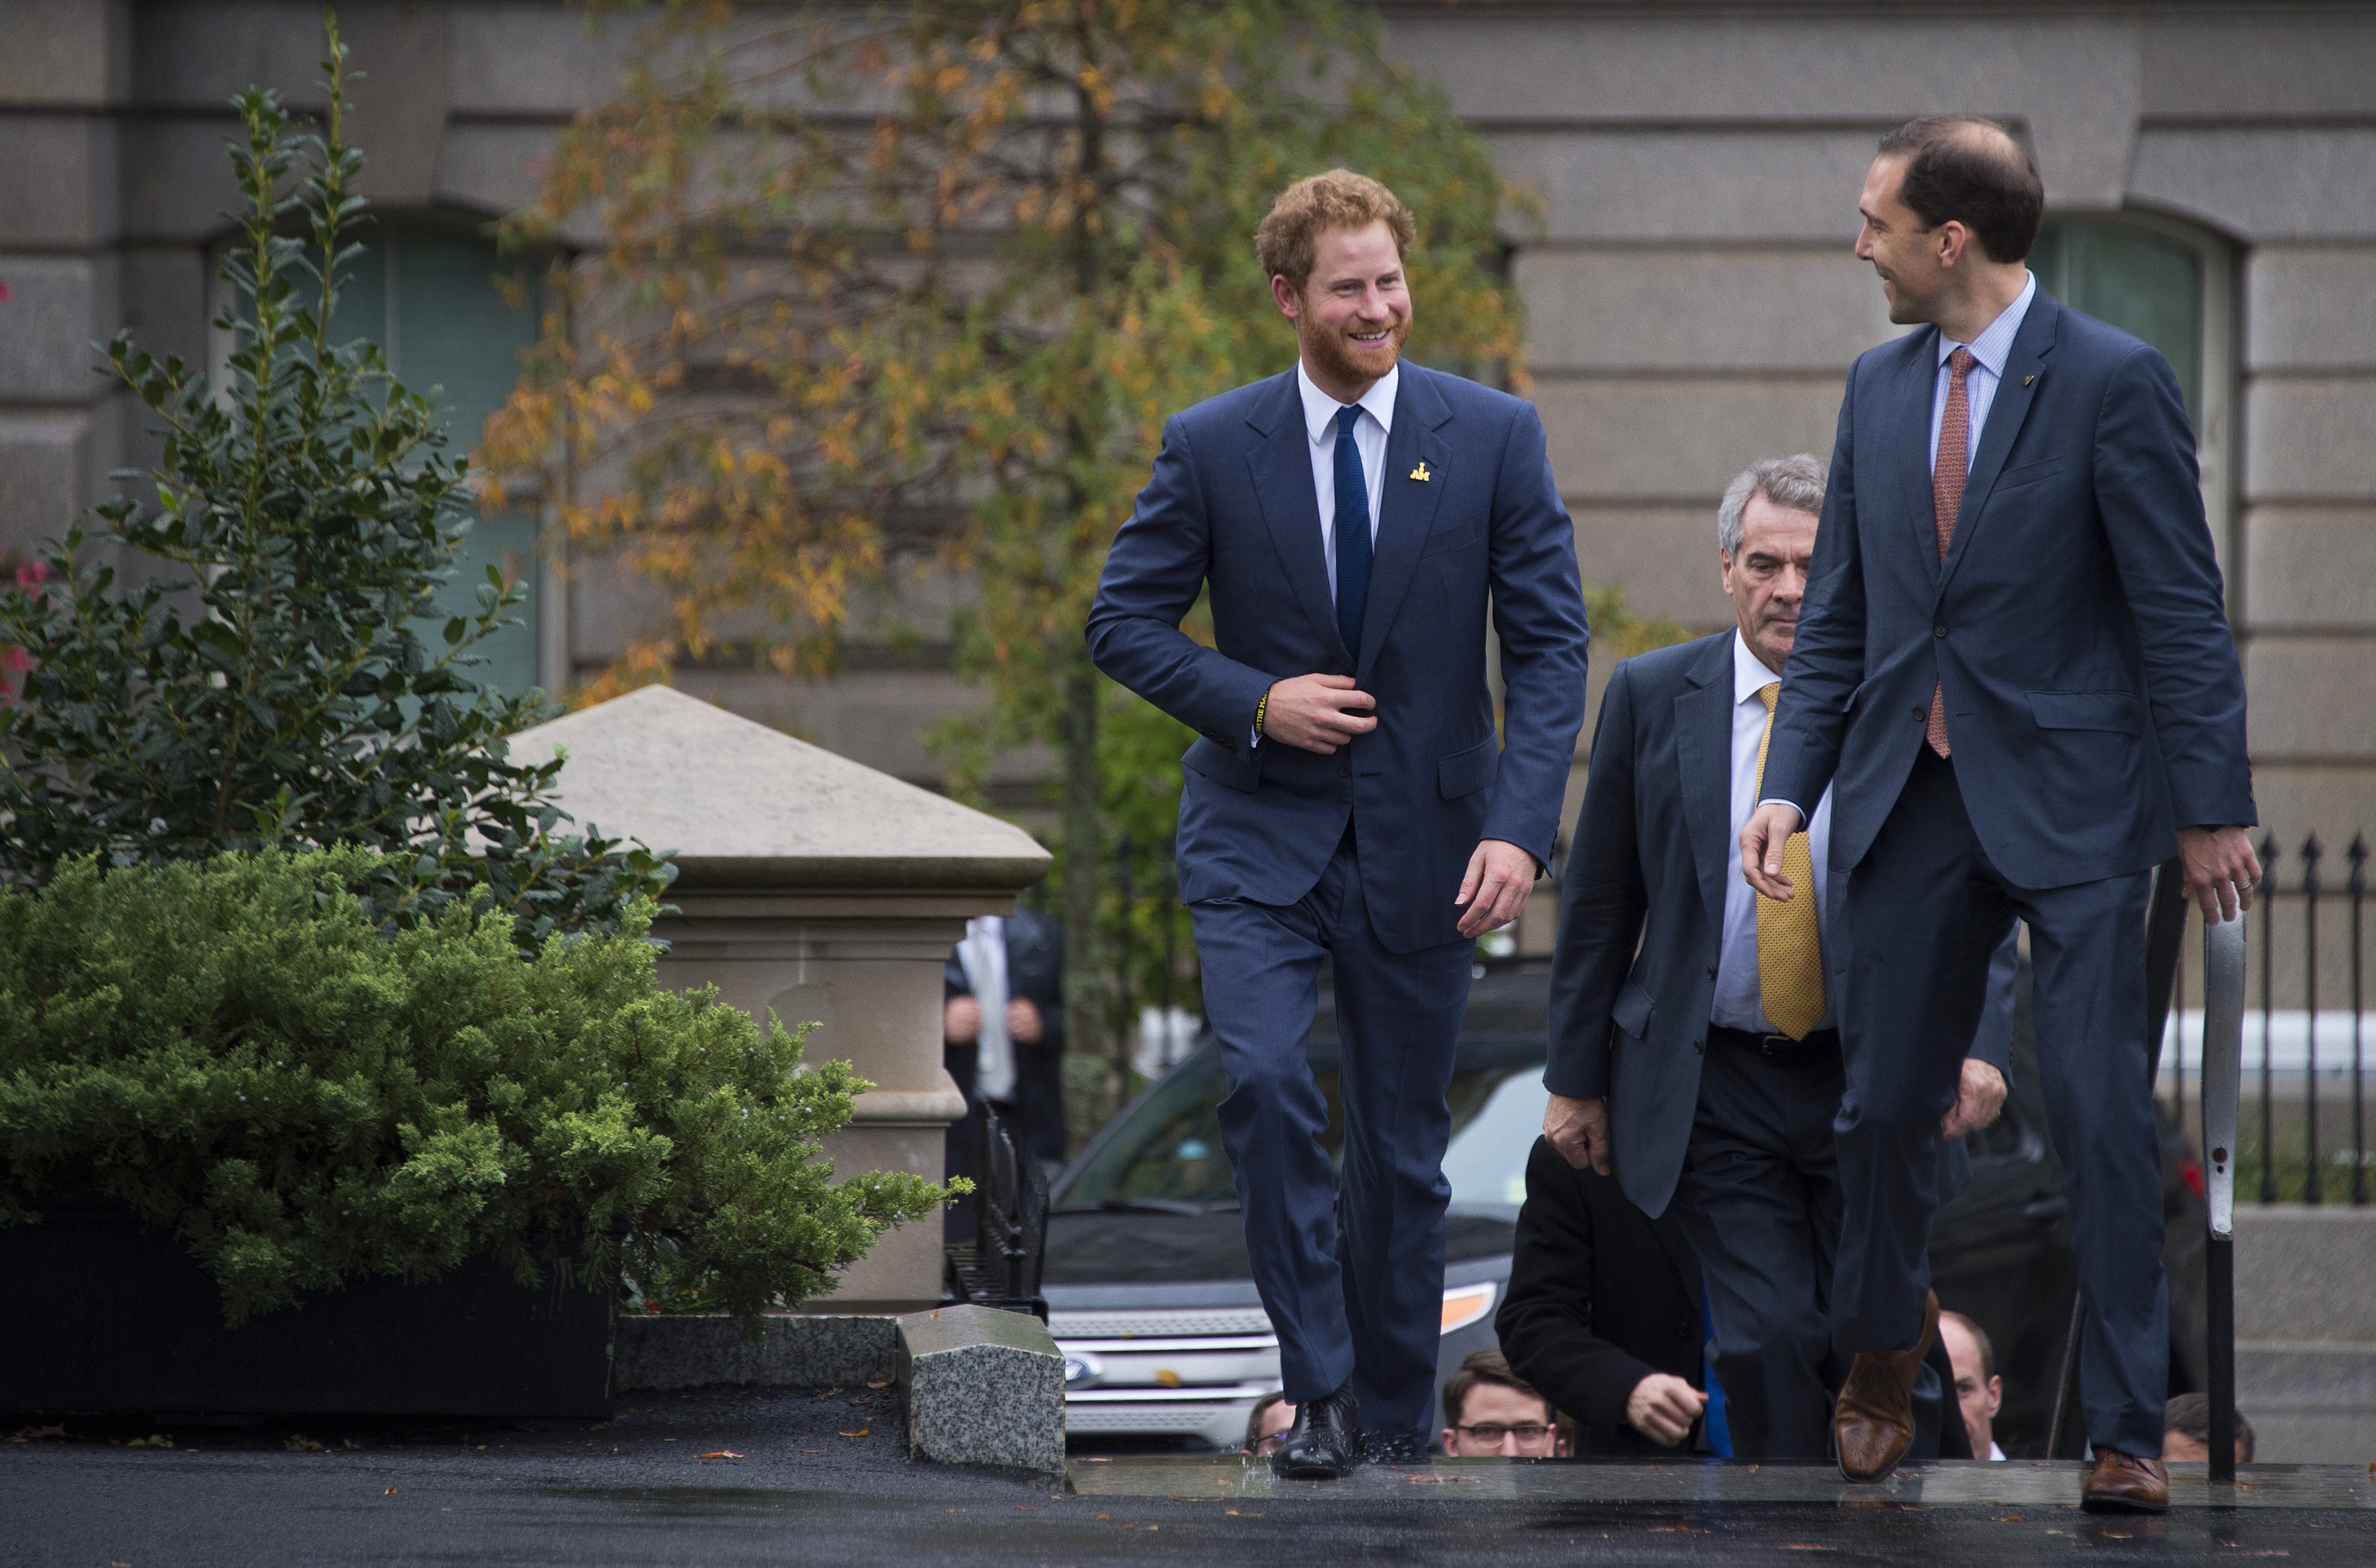 El príncipe Harry de camino a la Casa Blanca para reunirse con el ex presidente de los Estados Unidos Barack Obama en Washington, DC, el 28 de octubre de 2015 | Fuente: Getty Images